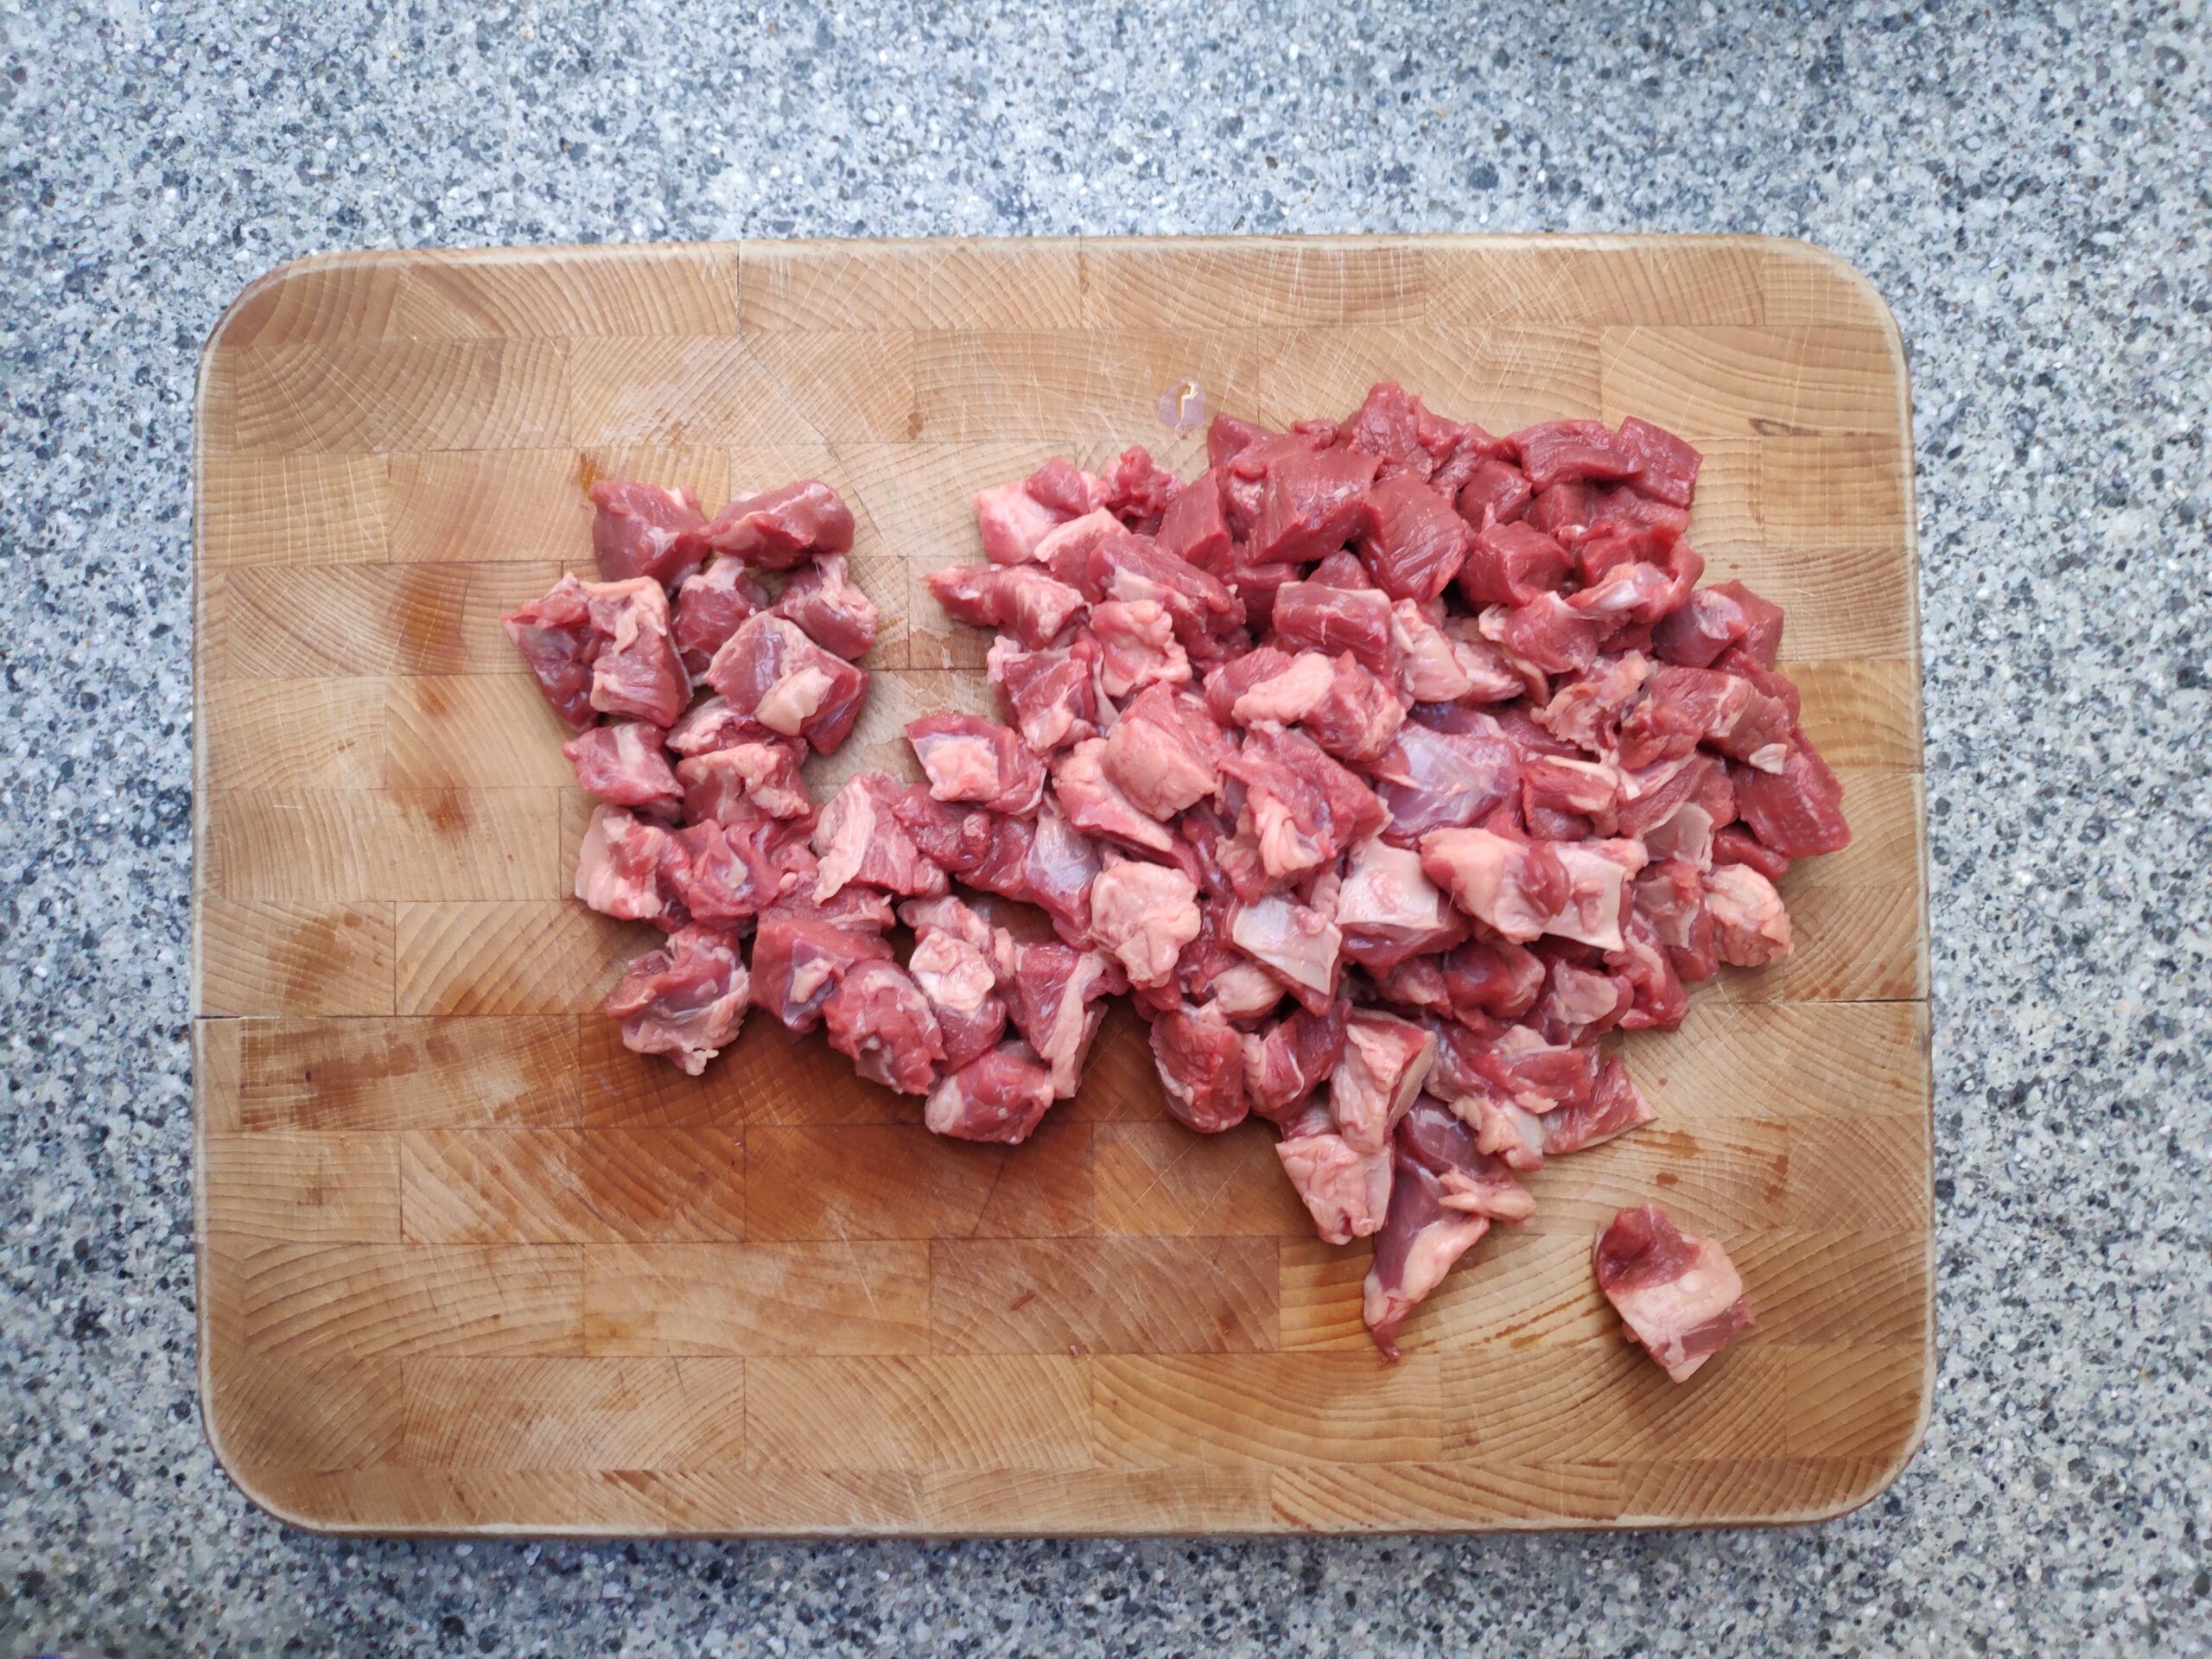 Jersey vlees in blokjes van ruim 1 cm.